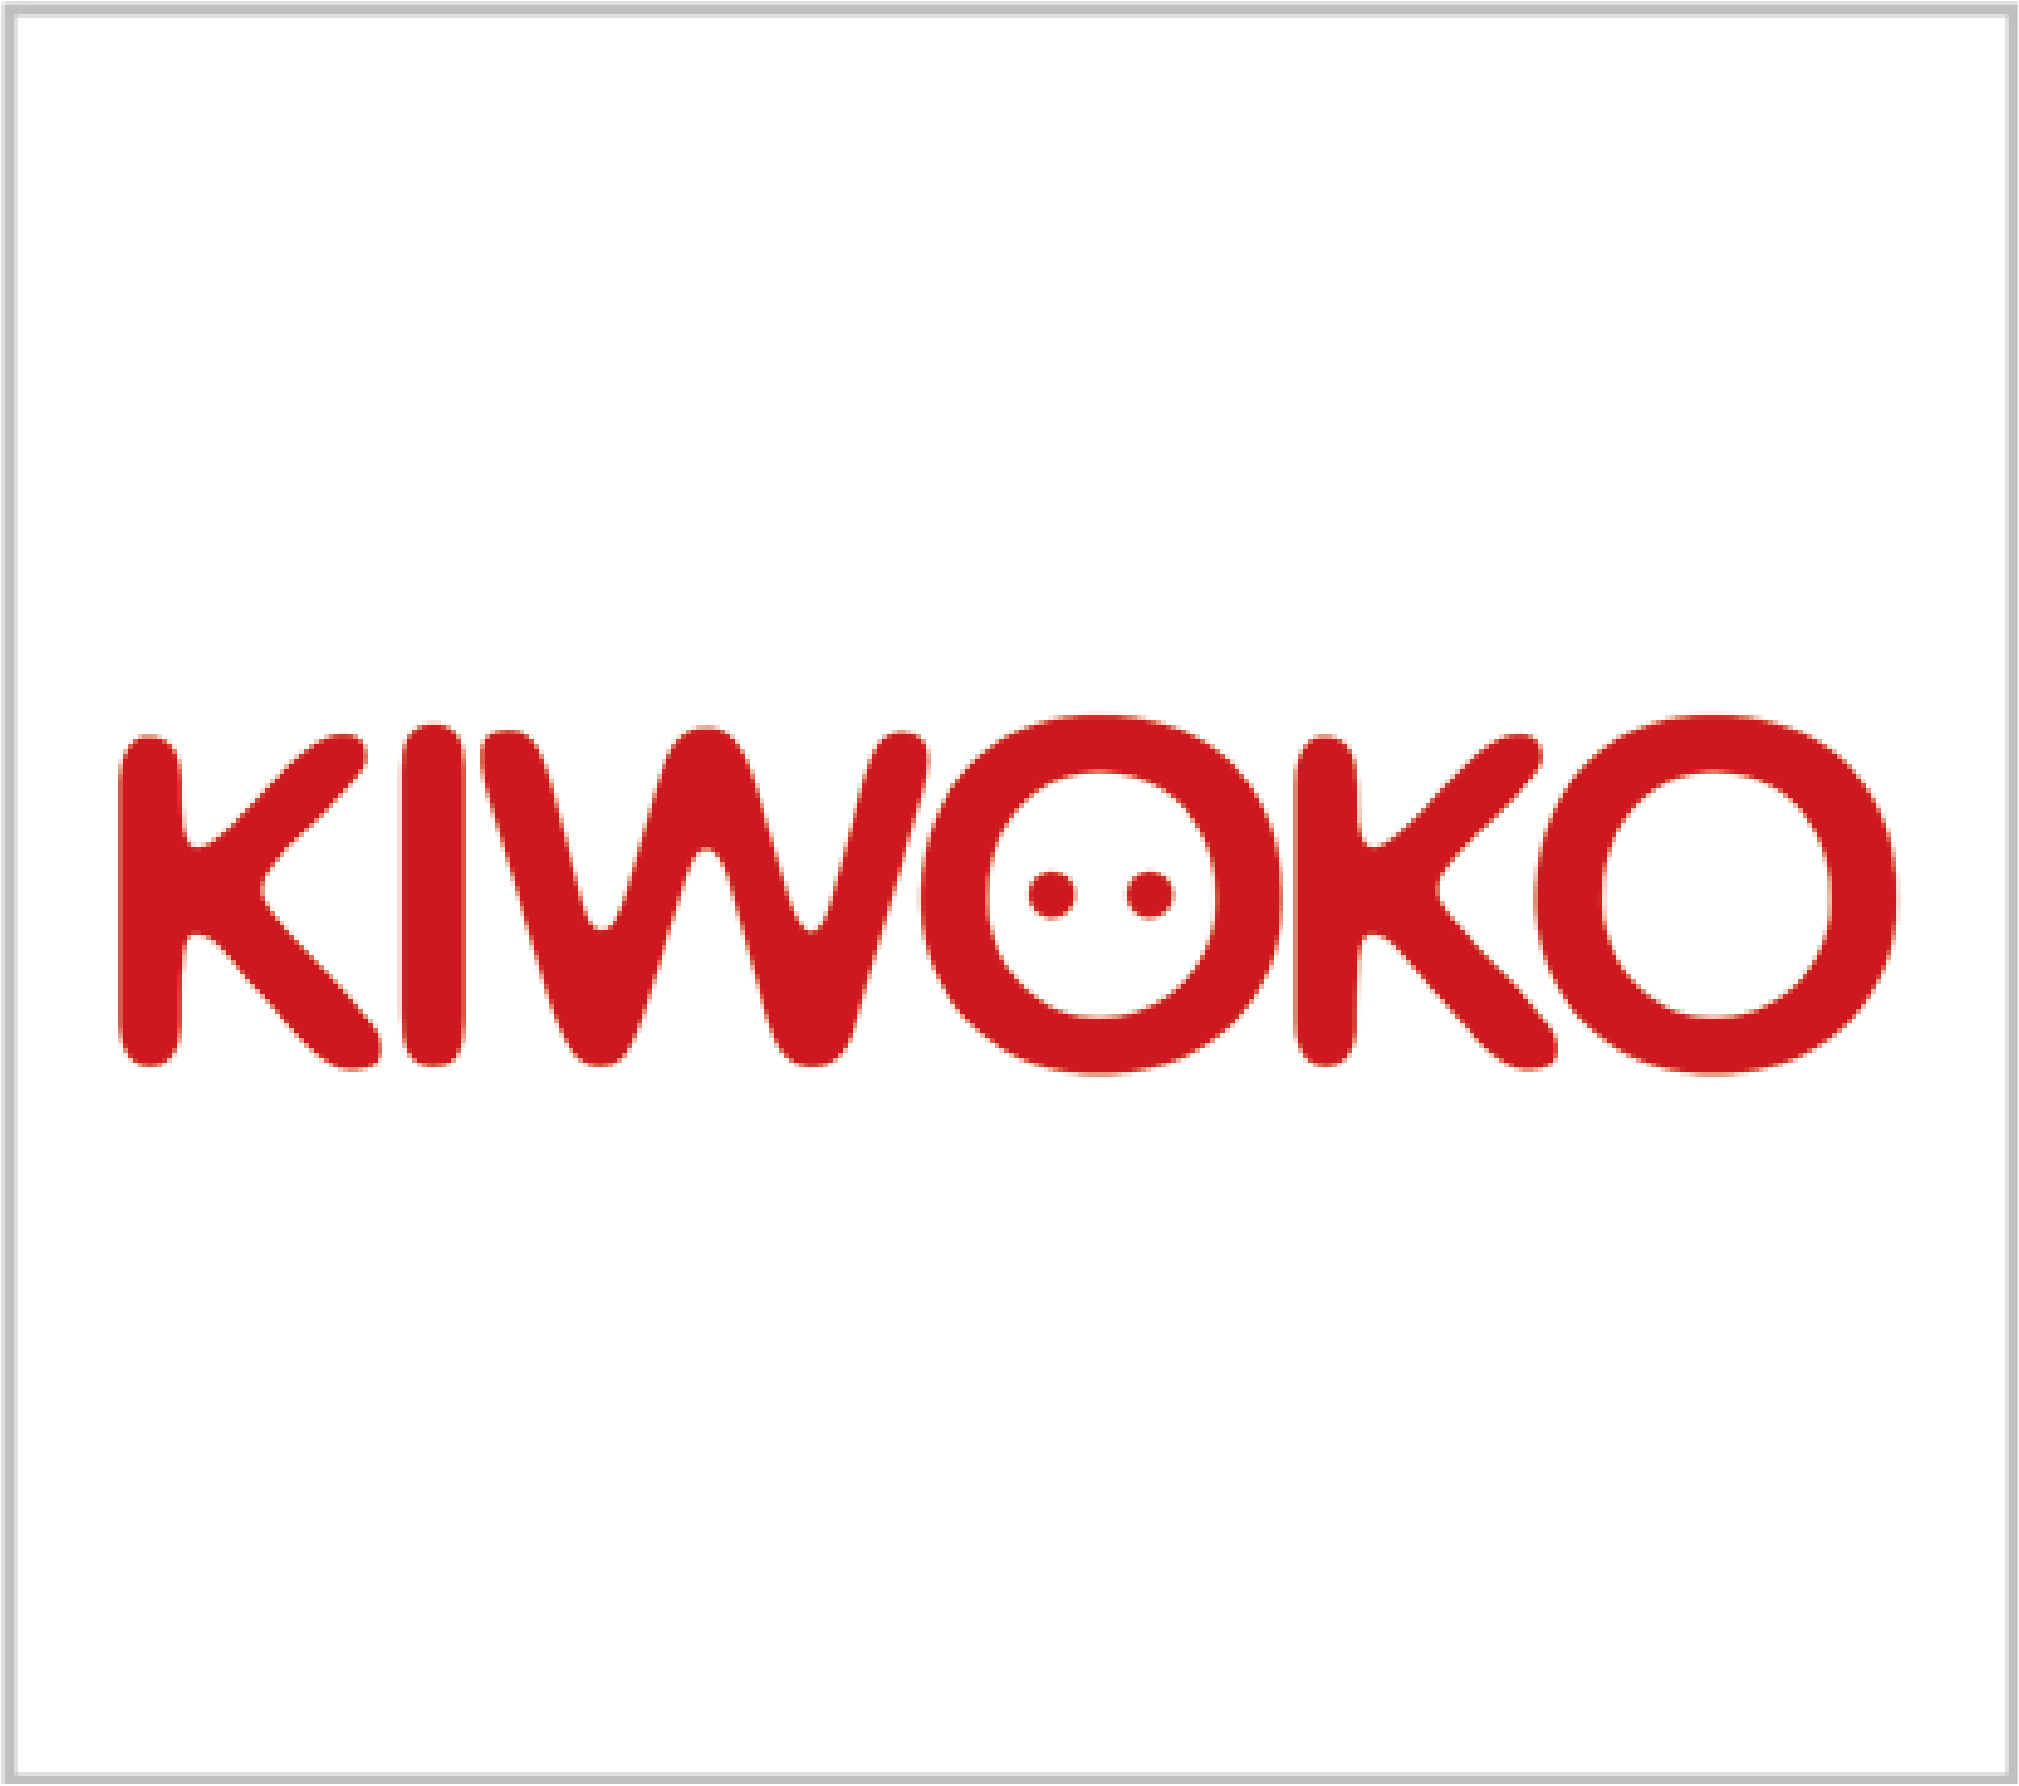 Fetico Kiwoko